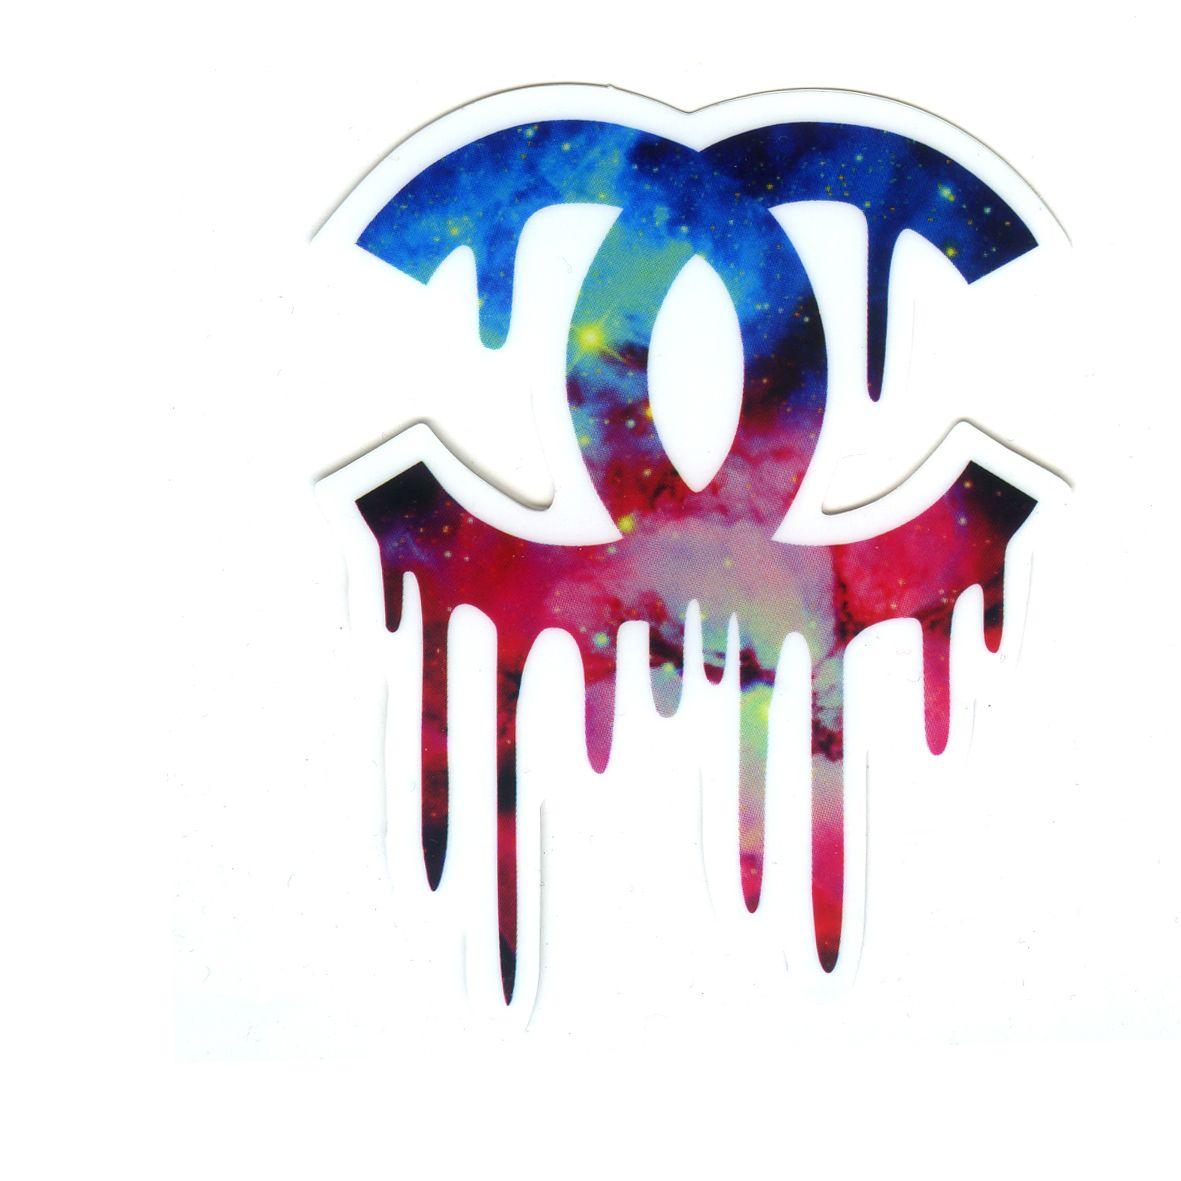 Chanel Galaxy Logo - Chanel melting galaxy logo, Height 8 cm decal sticker